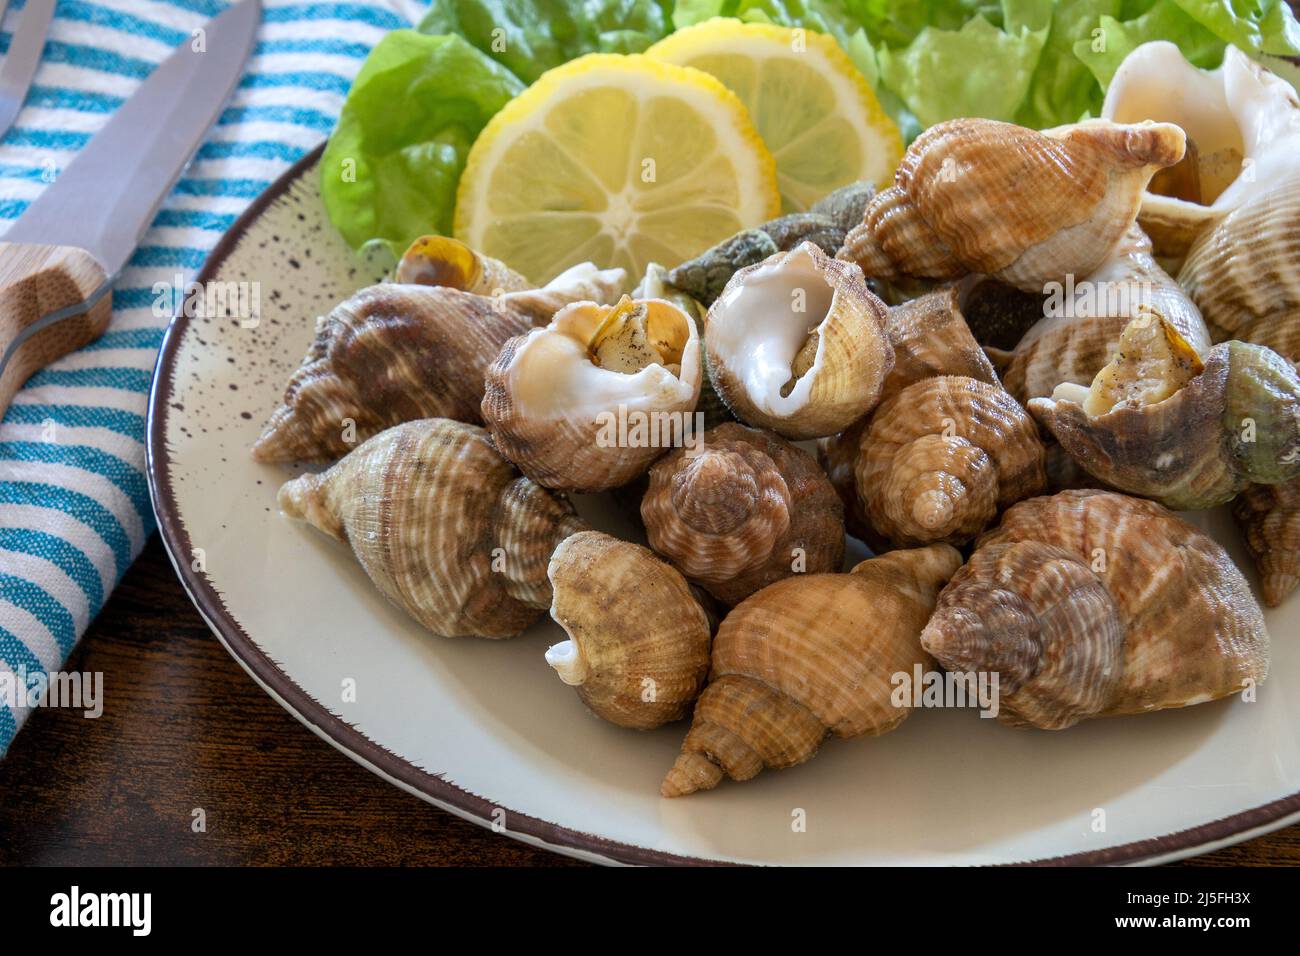 whelks cocinados en un plato con ensalada y limón Fotografía de stock -  Alamy